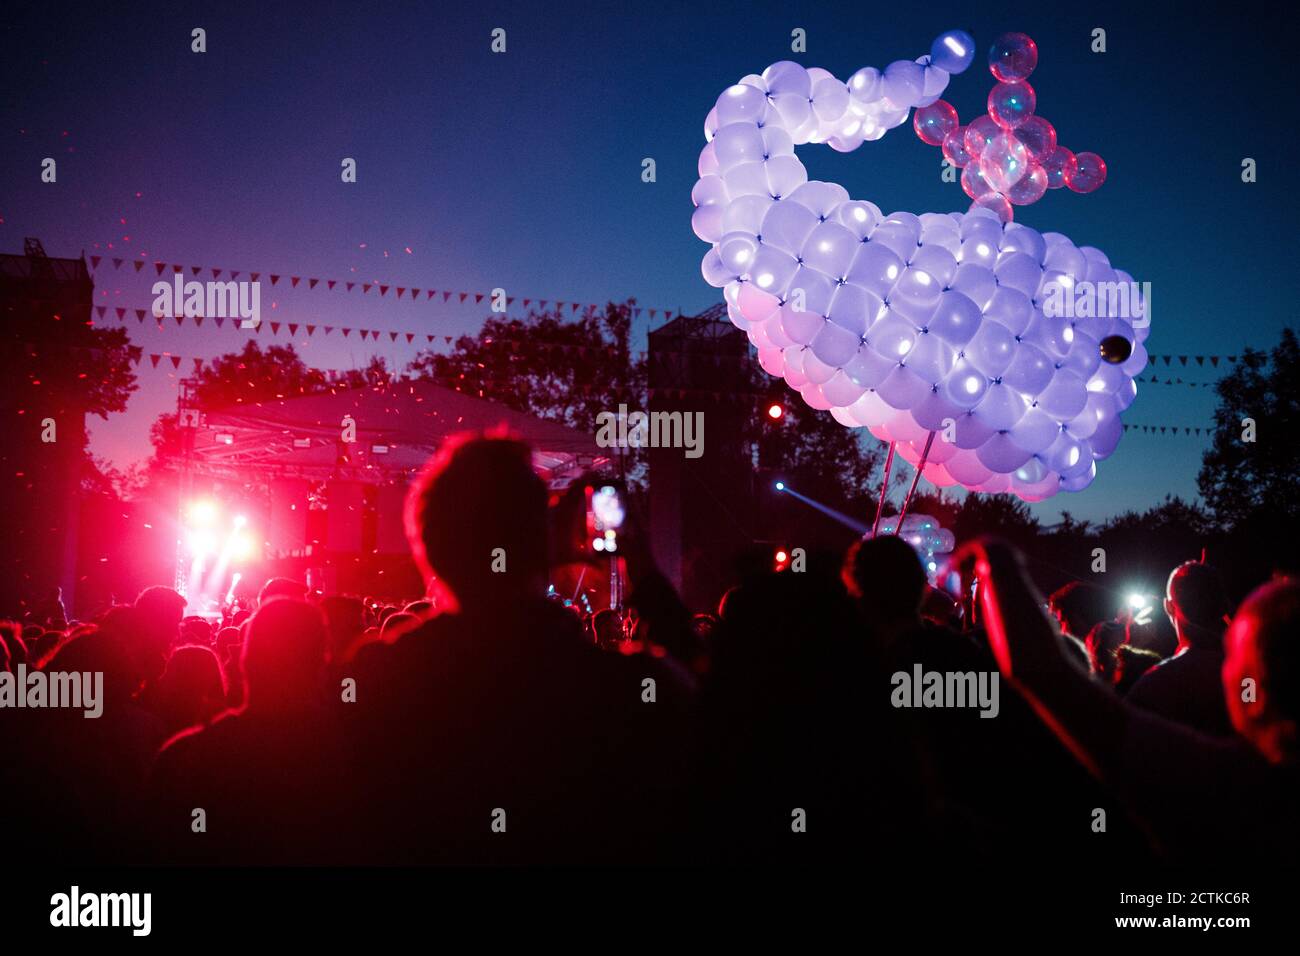 Baleine faite de ballons violets flottant au-dessus de la foule de gens s'amuser pendant le festival de musique de nuit Banque D'Images